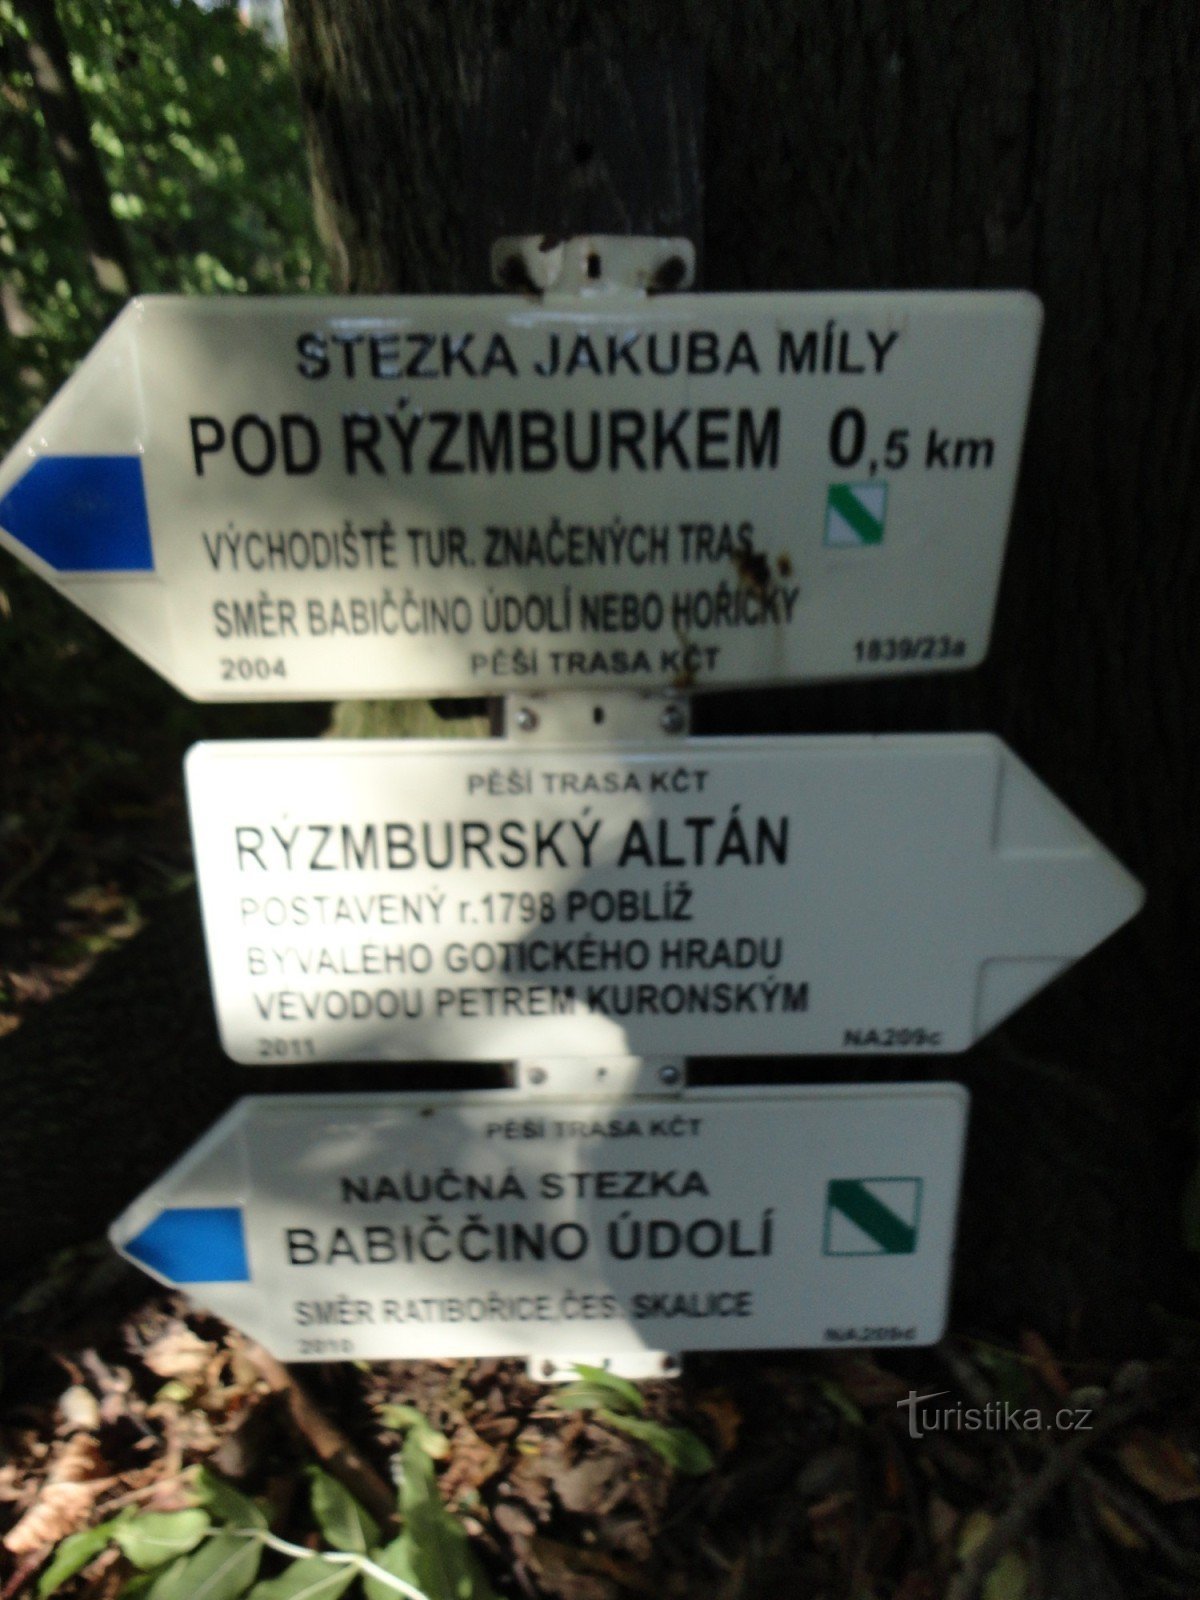 tourist crossroad at the Rýzmbursky gazebo